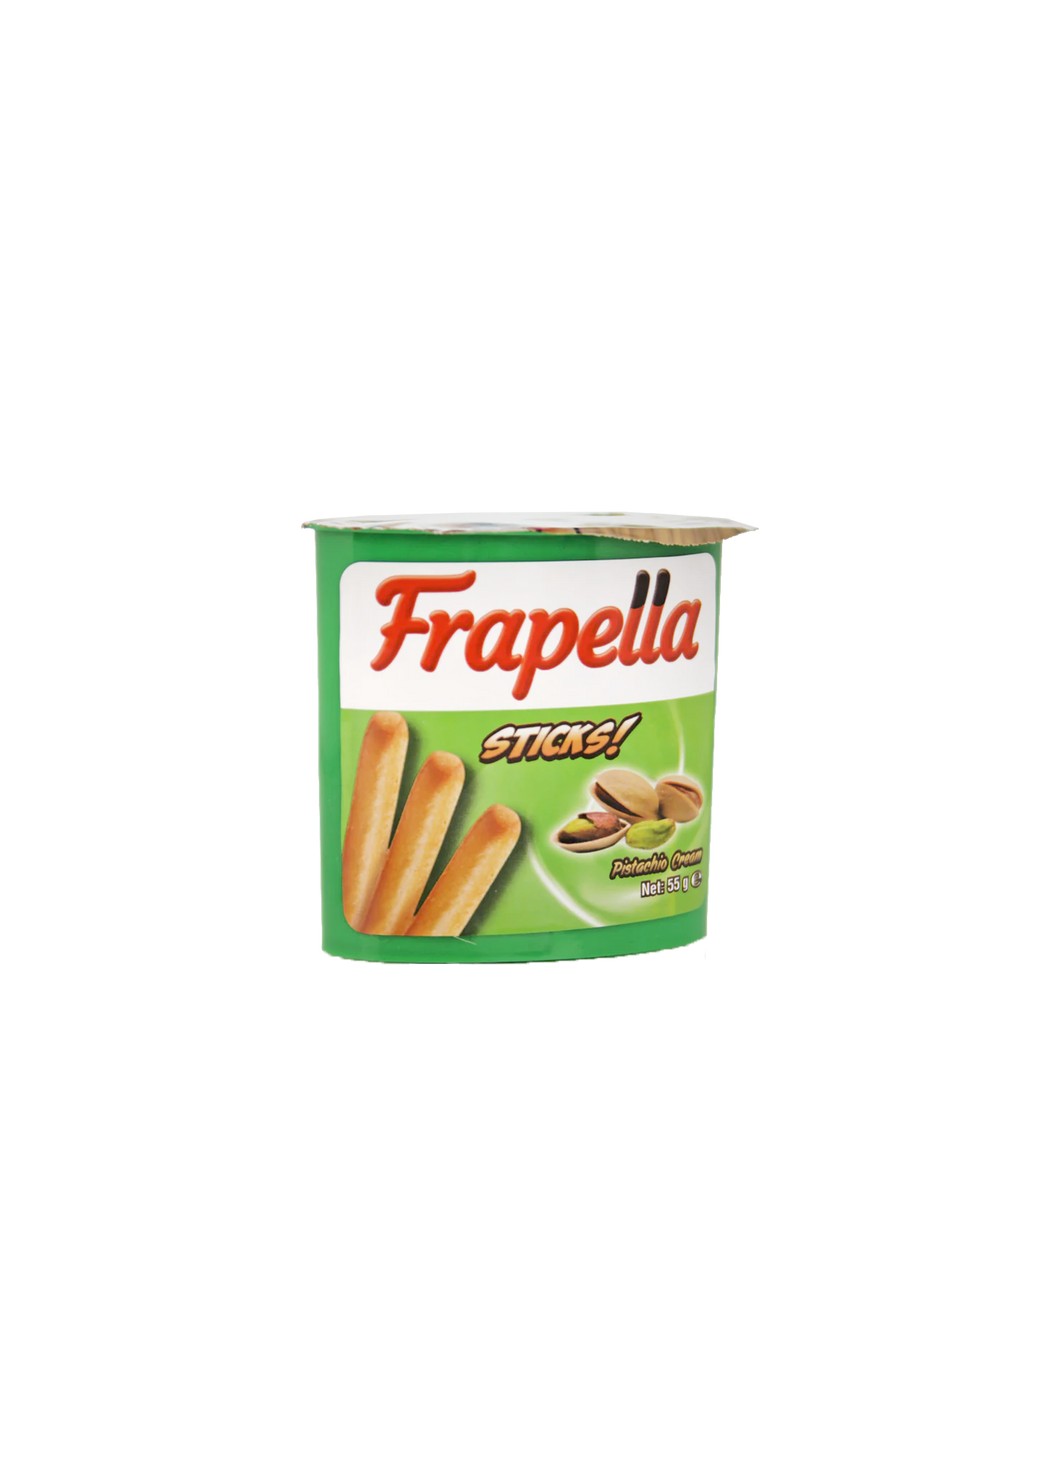 Frapella Biscuit Sticks Pistachio Cream 55g